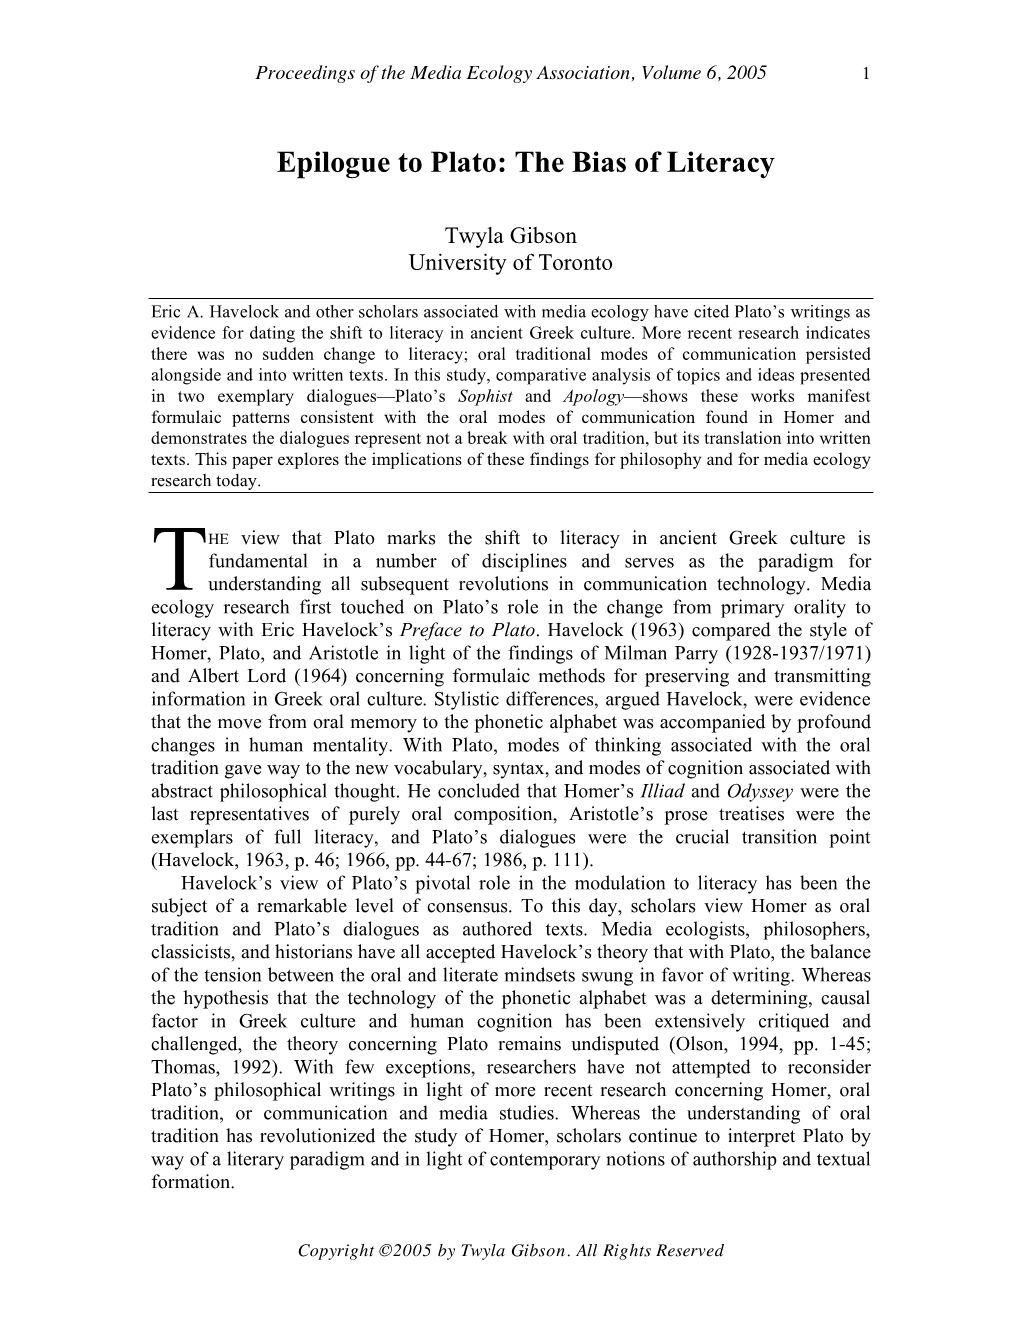 Twyla Gibson, “Epilogue to Plato: the Bias of Literacy”